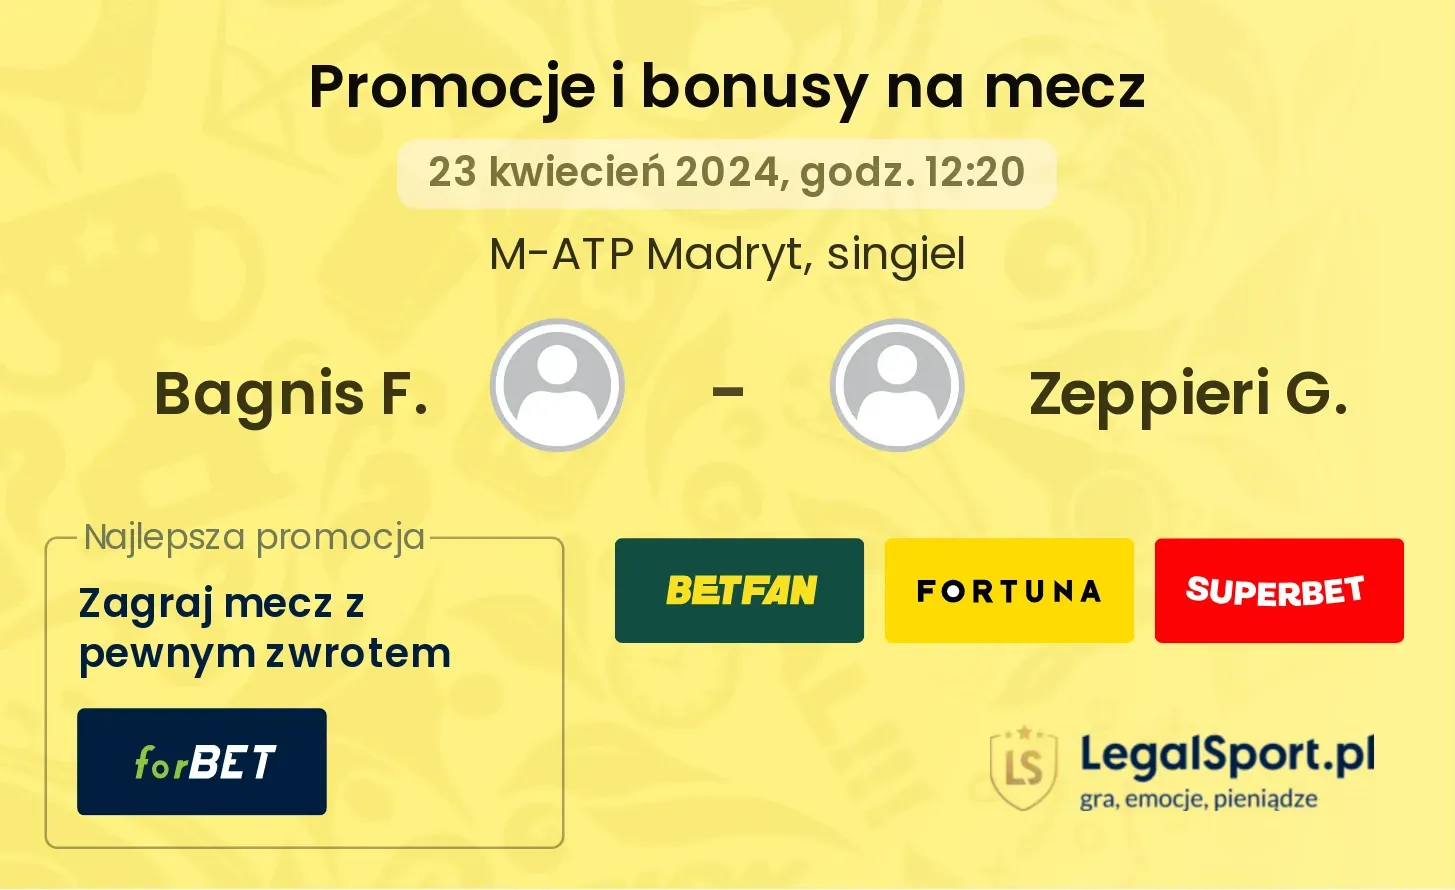 Bagnis F. - Zeppieri G. promocje bonusy na mecz